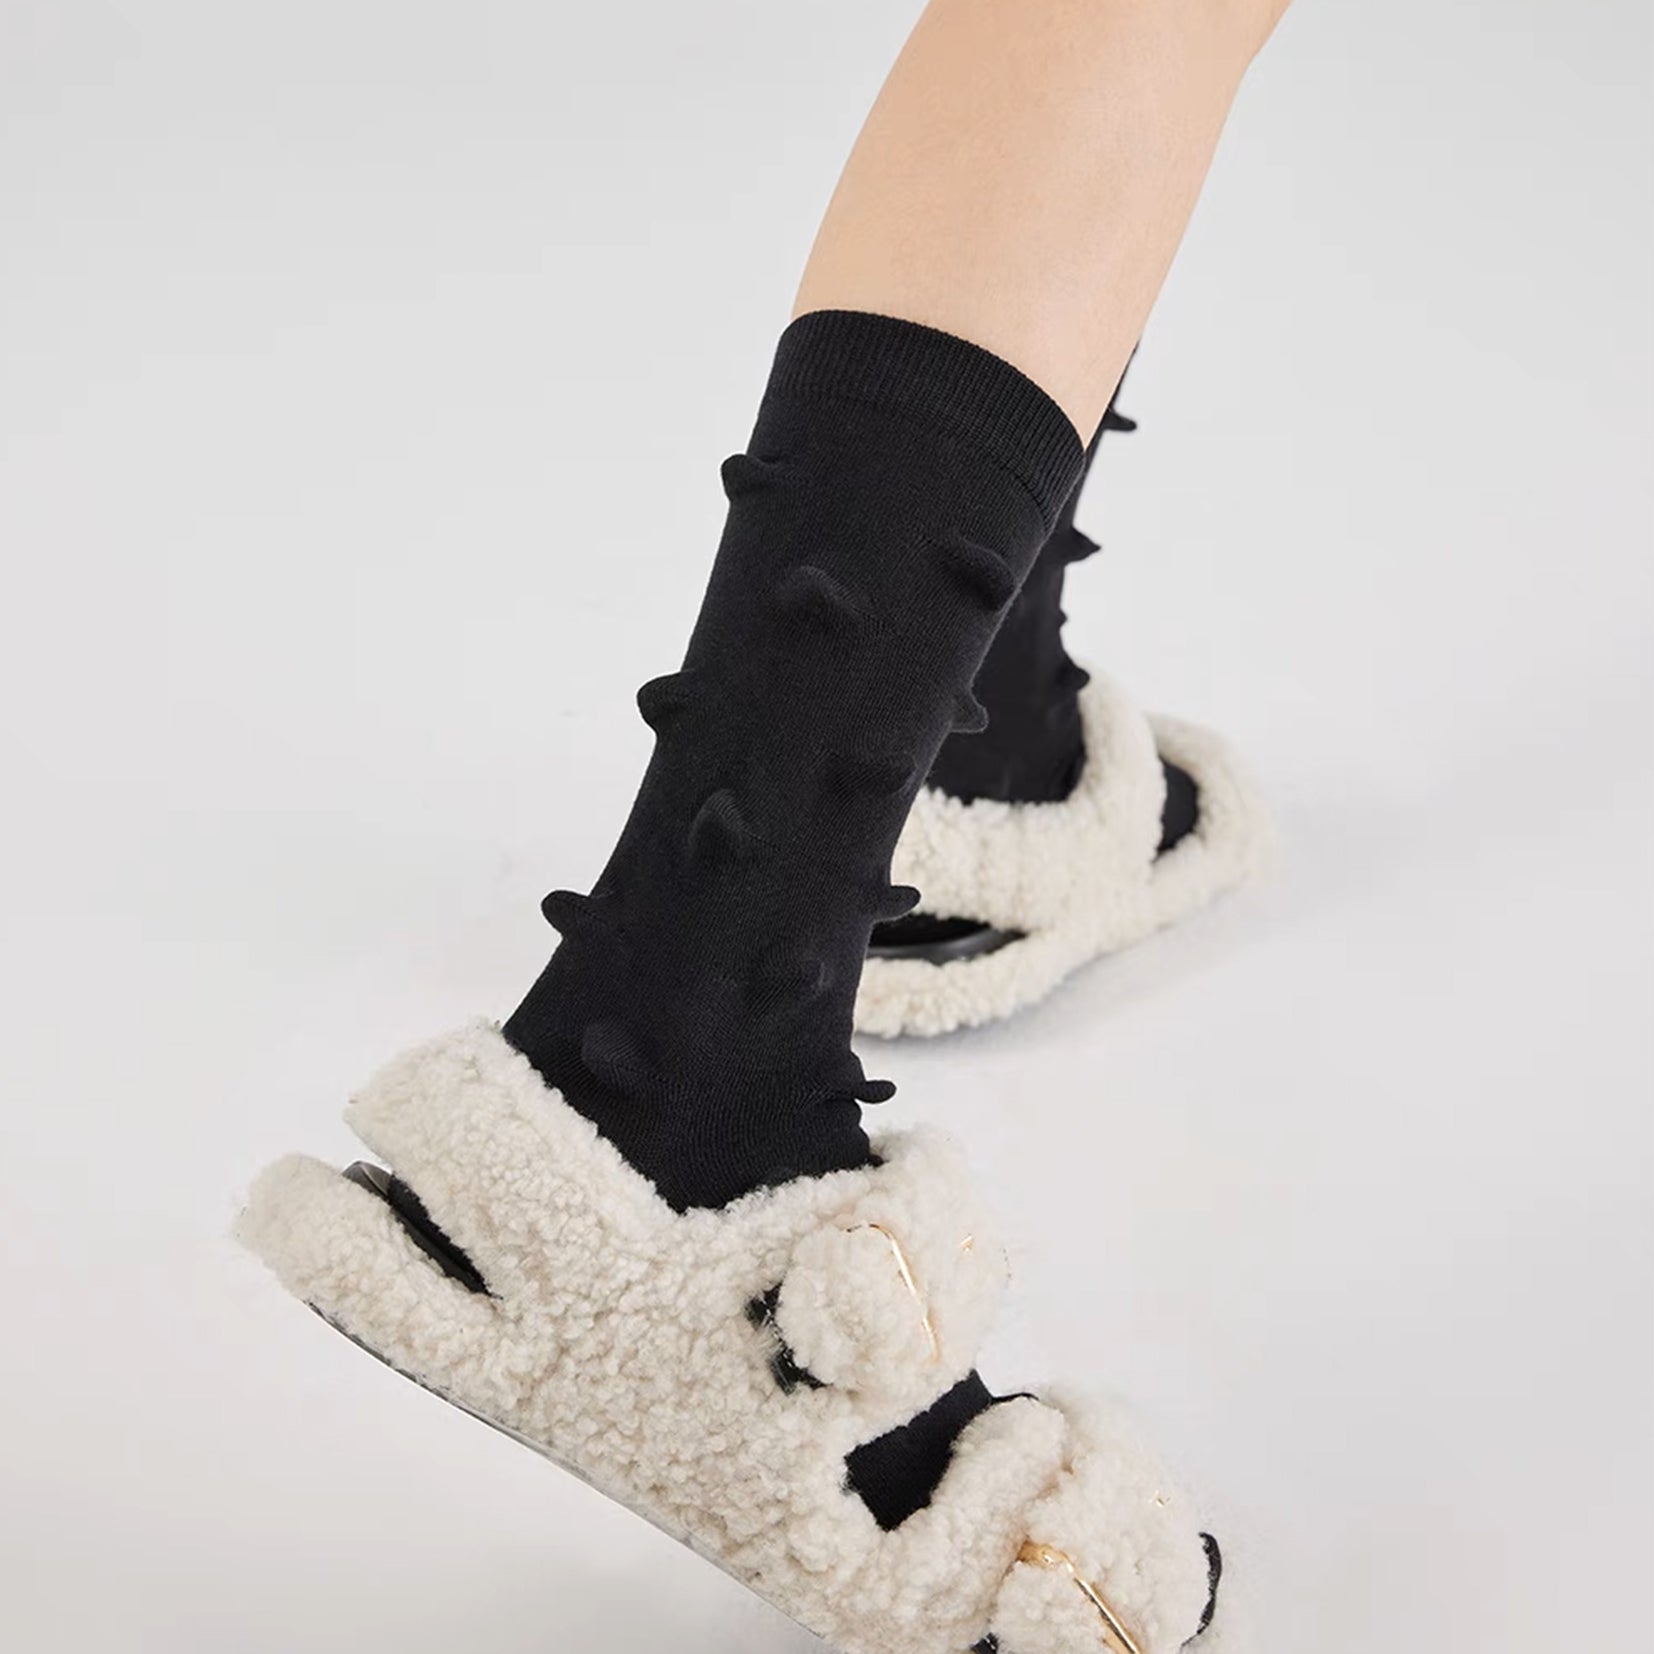 Hedgehog bumpy mid-calf sock - black